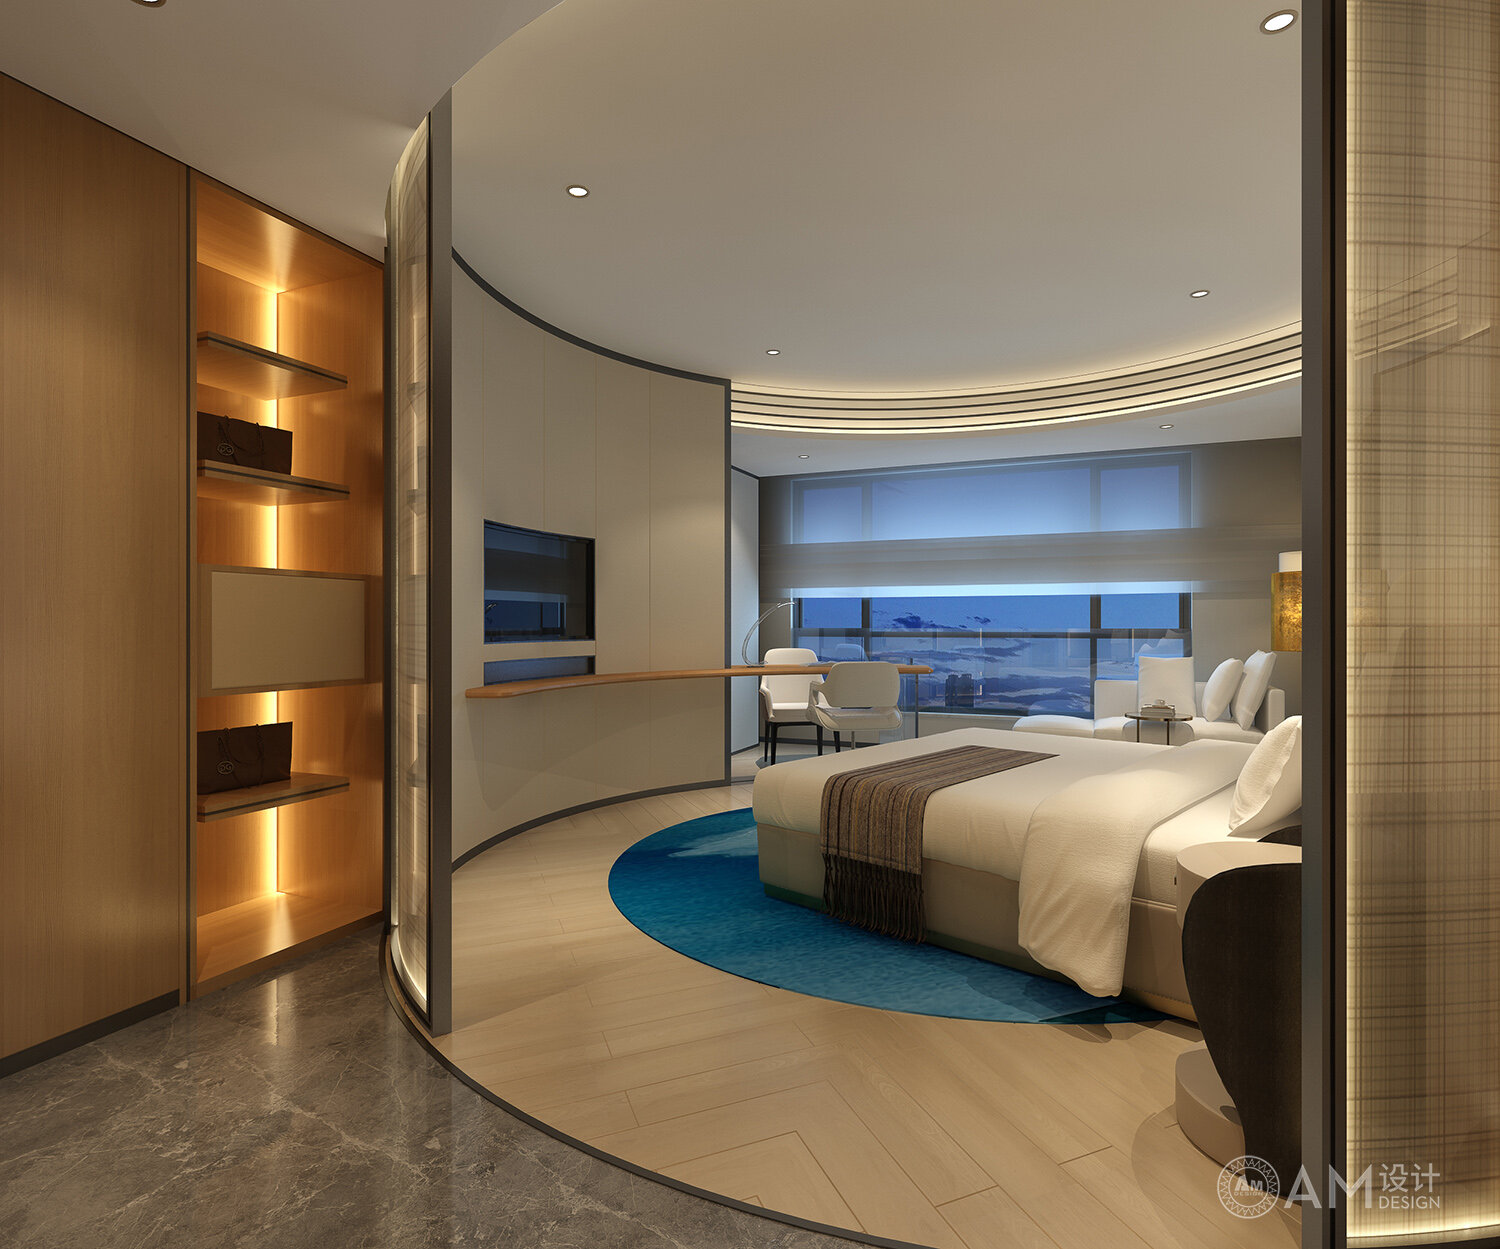 AM DESIGN | Xi'an Jinpan Hotel Guest Room Design